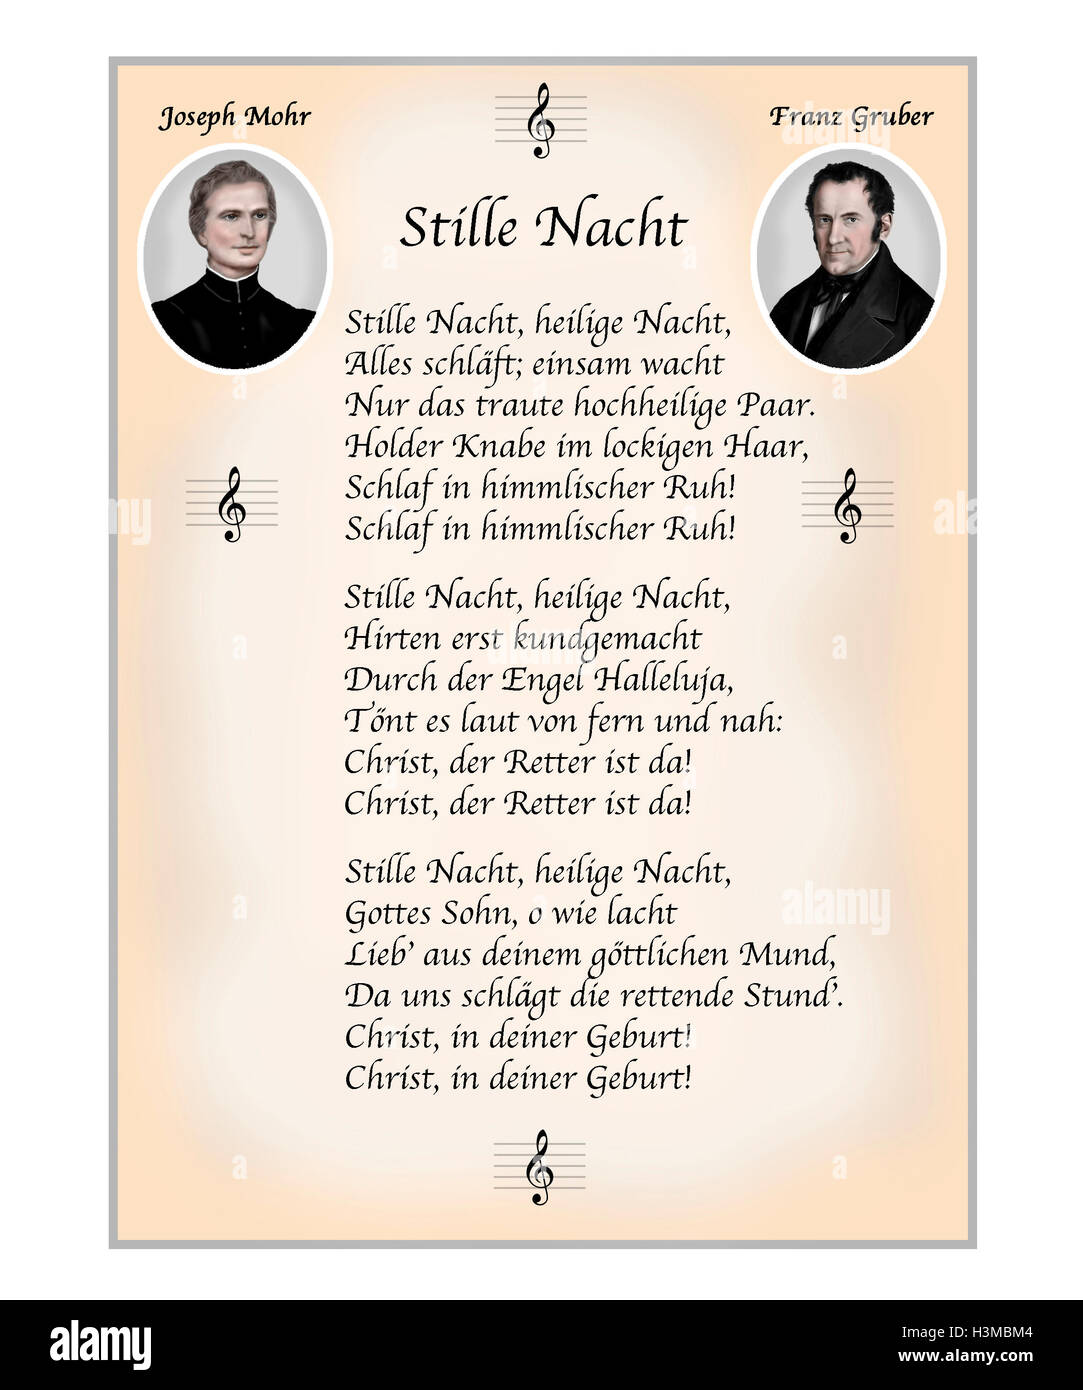 Stille Nacht. Texte allemand. Deutscher Text. Illustration moderne avec des portraits du poète Joseph Mohr et compositeur Franz Gruber Banque D'Images